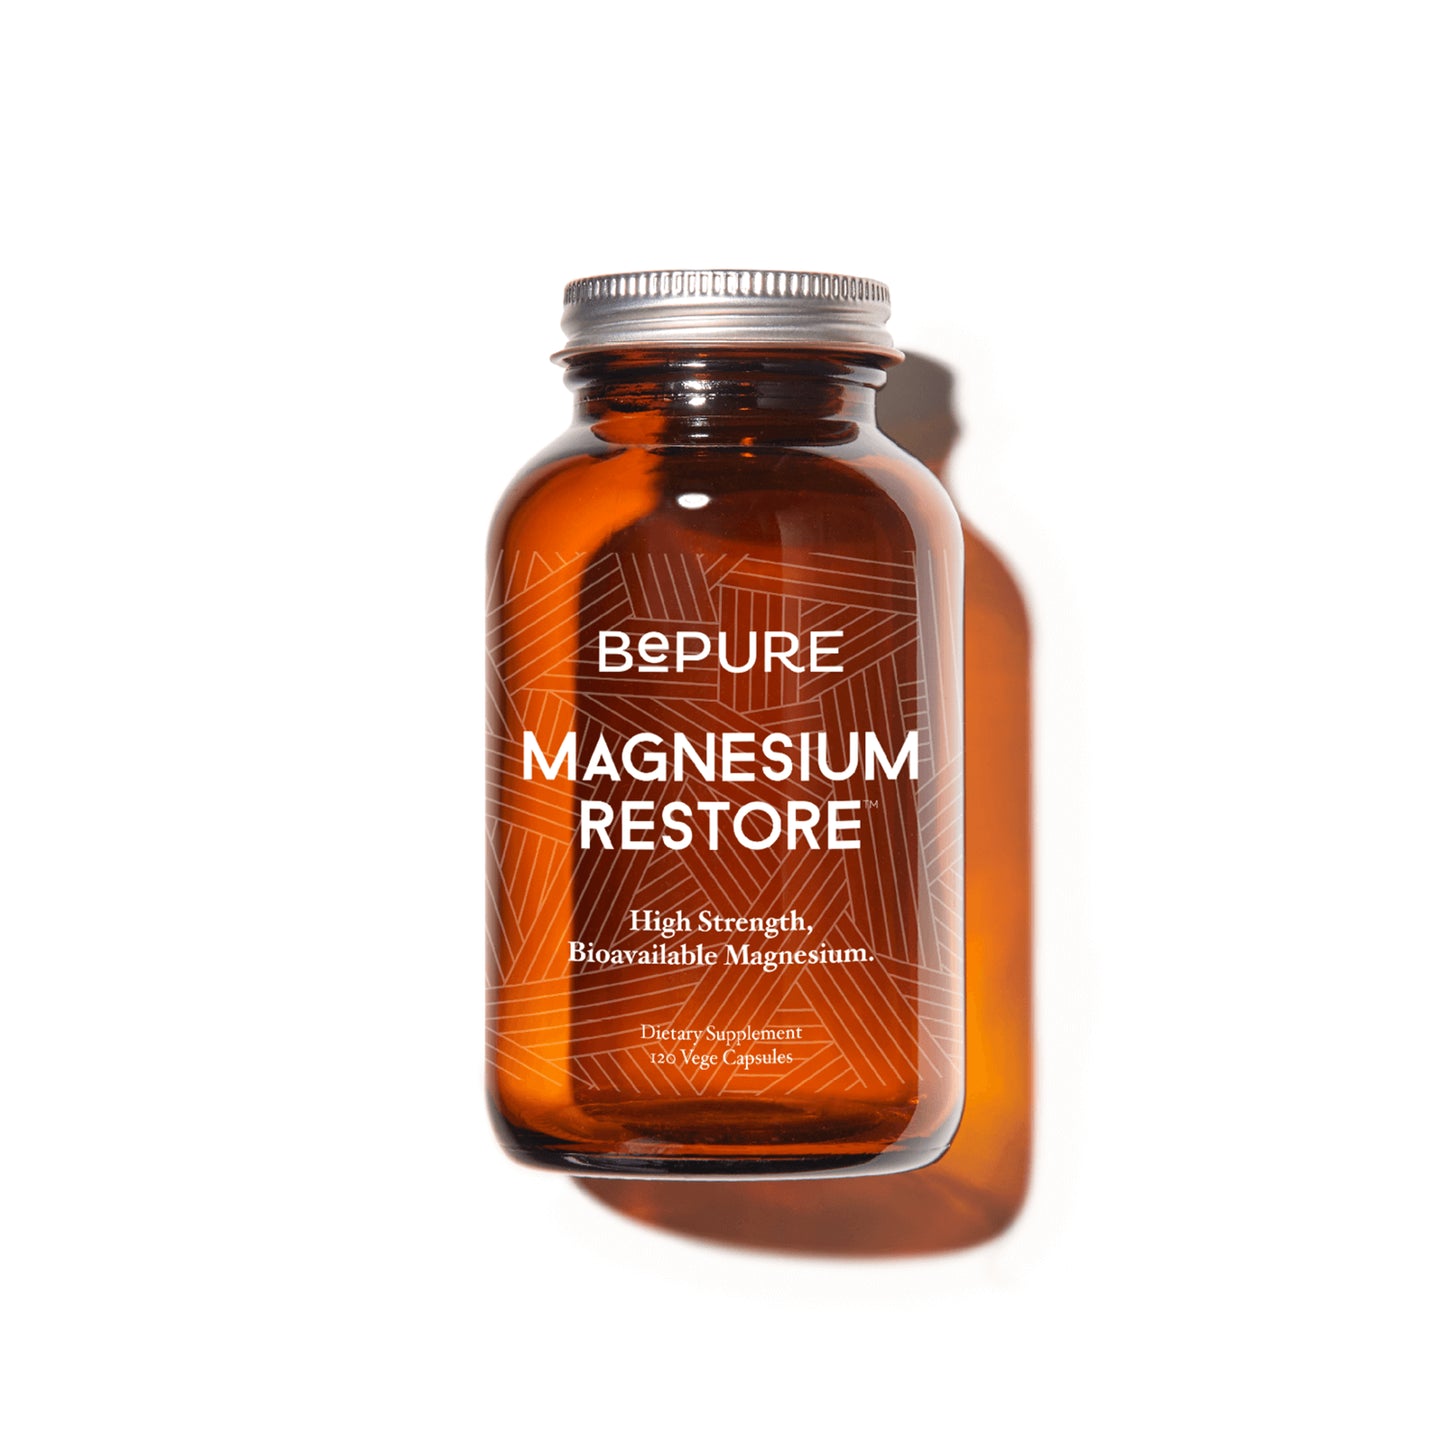 BePure Magnesium Restore